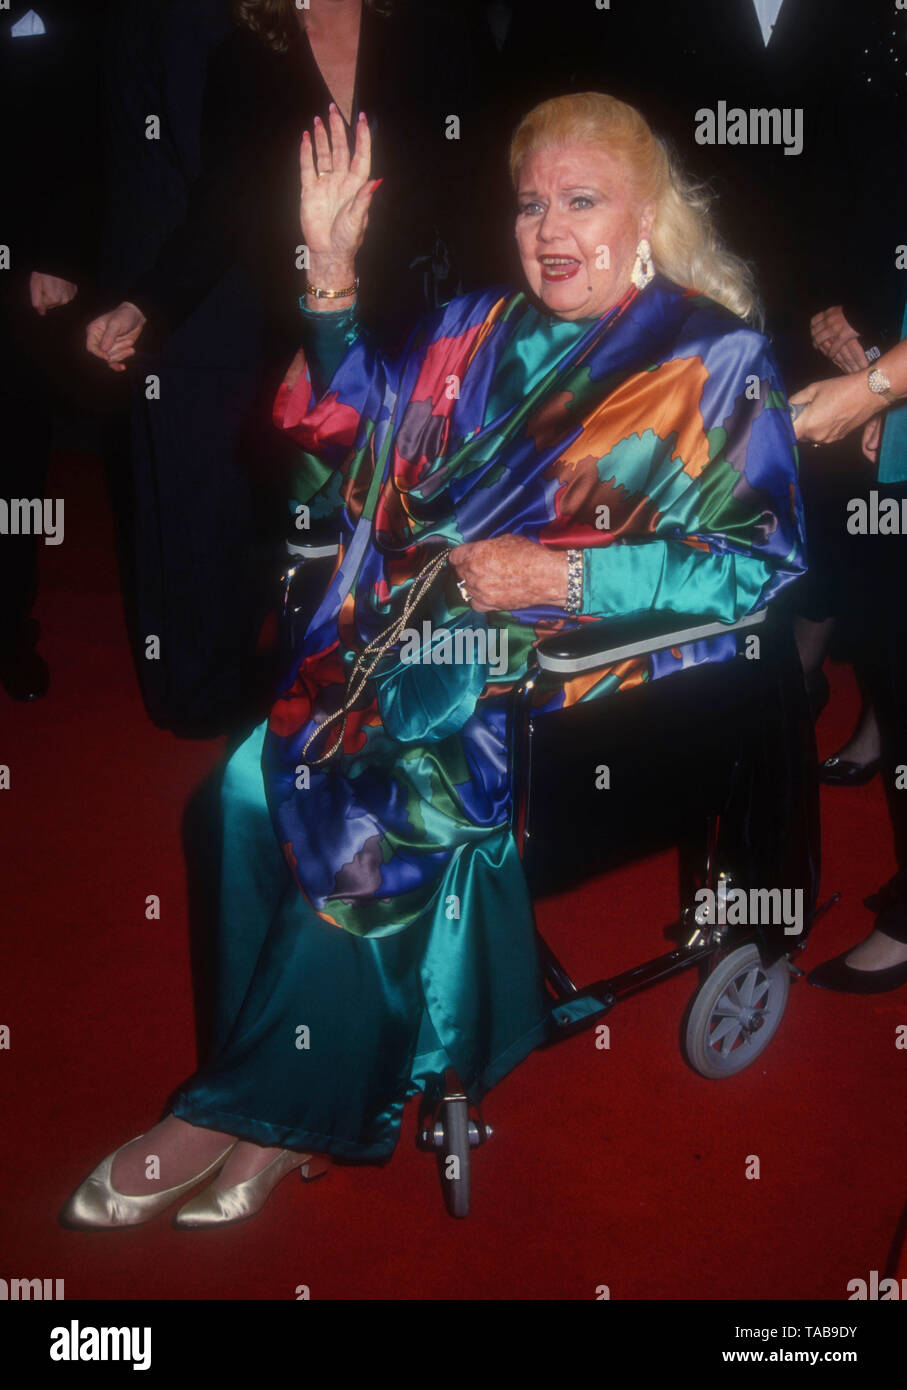 Westwood, Californie, USA 28 avril 1994 L'actrice Ginger Rogers assiste à la Metro Goldwyn Mayer' 'That's Entertainment III" Création le 28 avril 1994 au Théâtre National de Mann à Westwood, Californie, USA. Photo de Barry King/Alamy Stock Photo Banque D'Images